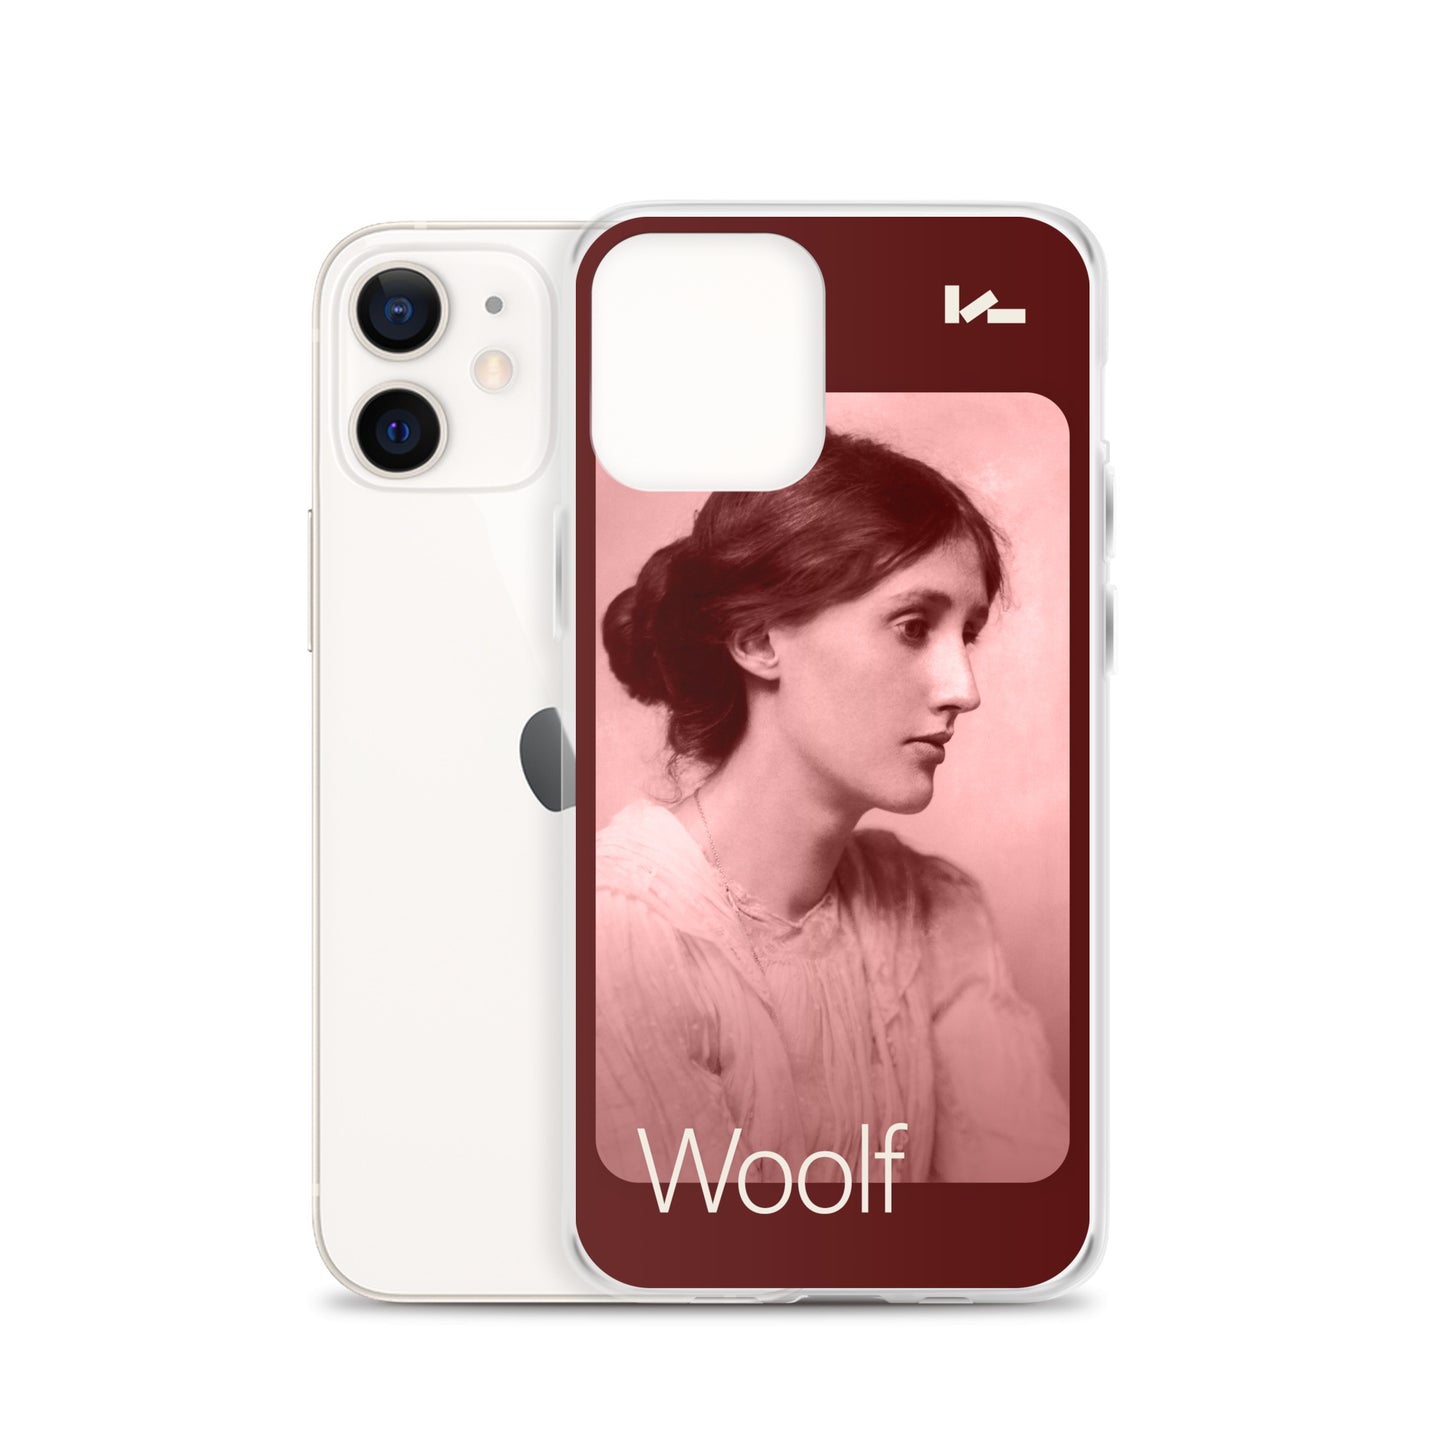 Virginia Woolf Portrait Case